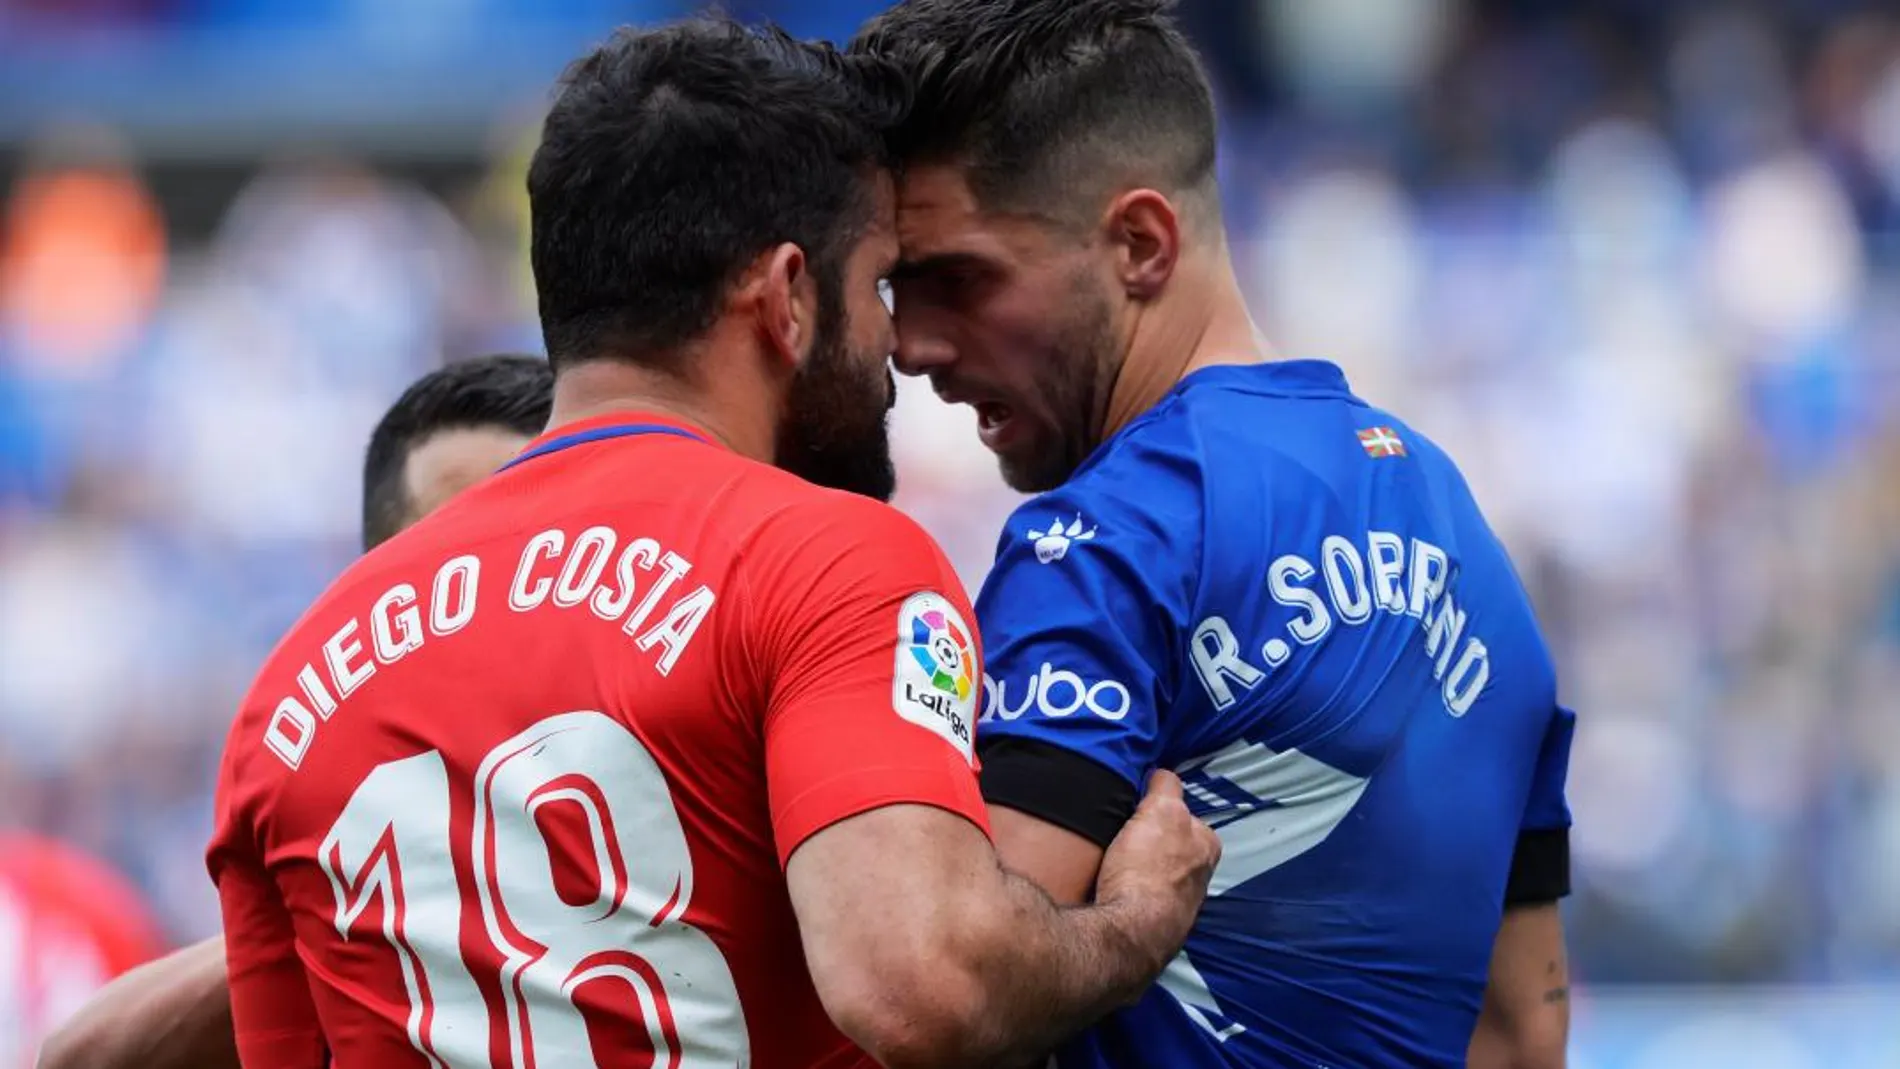 Diego Costa se enfrernta a Ruben Sobrino. REUTERS/Vincent West